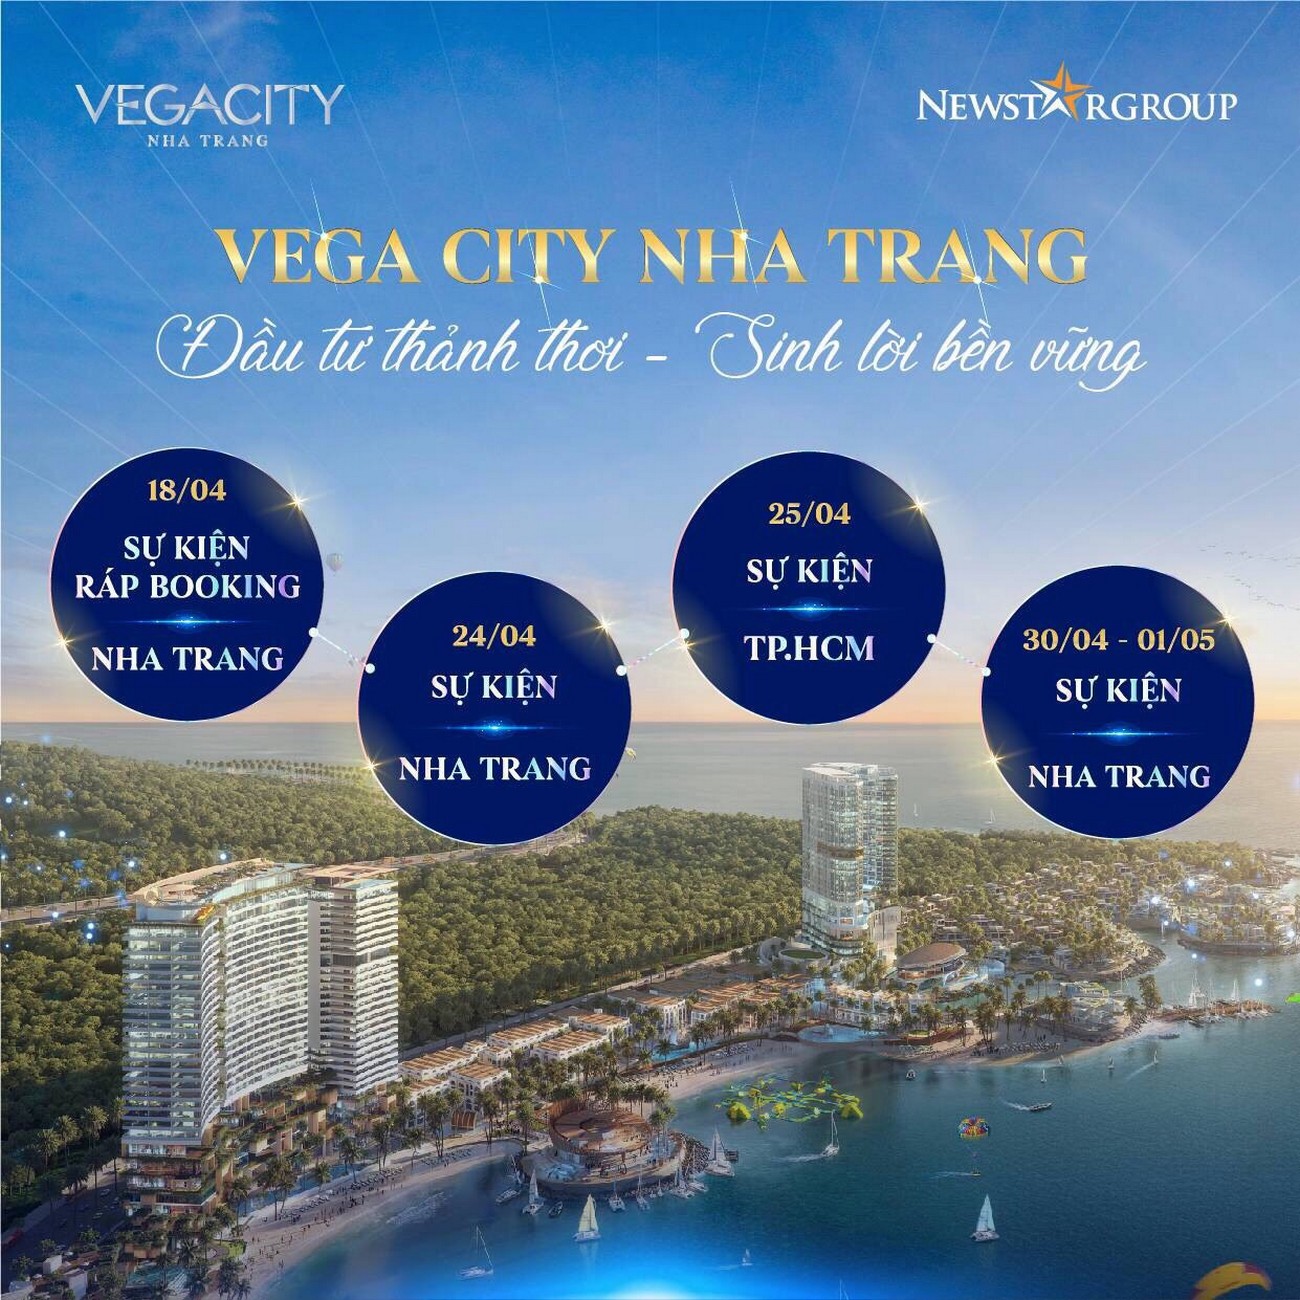 Mở bán Shophouse Vega City Nha Trang - chủ đầu tư KDI Holdings